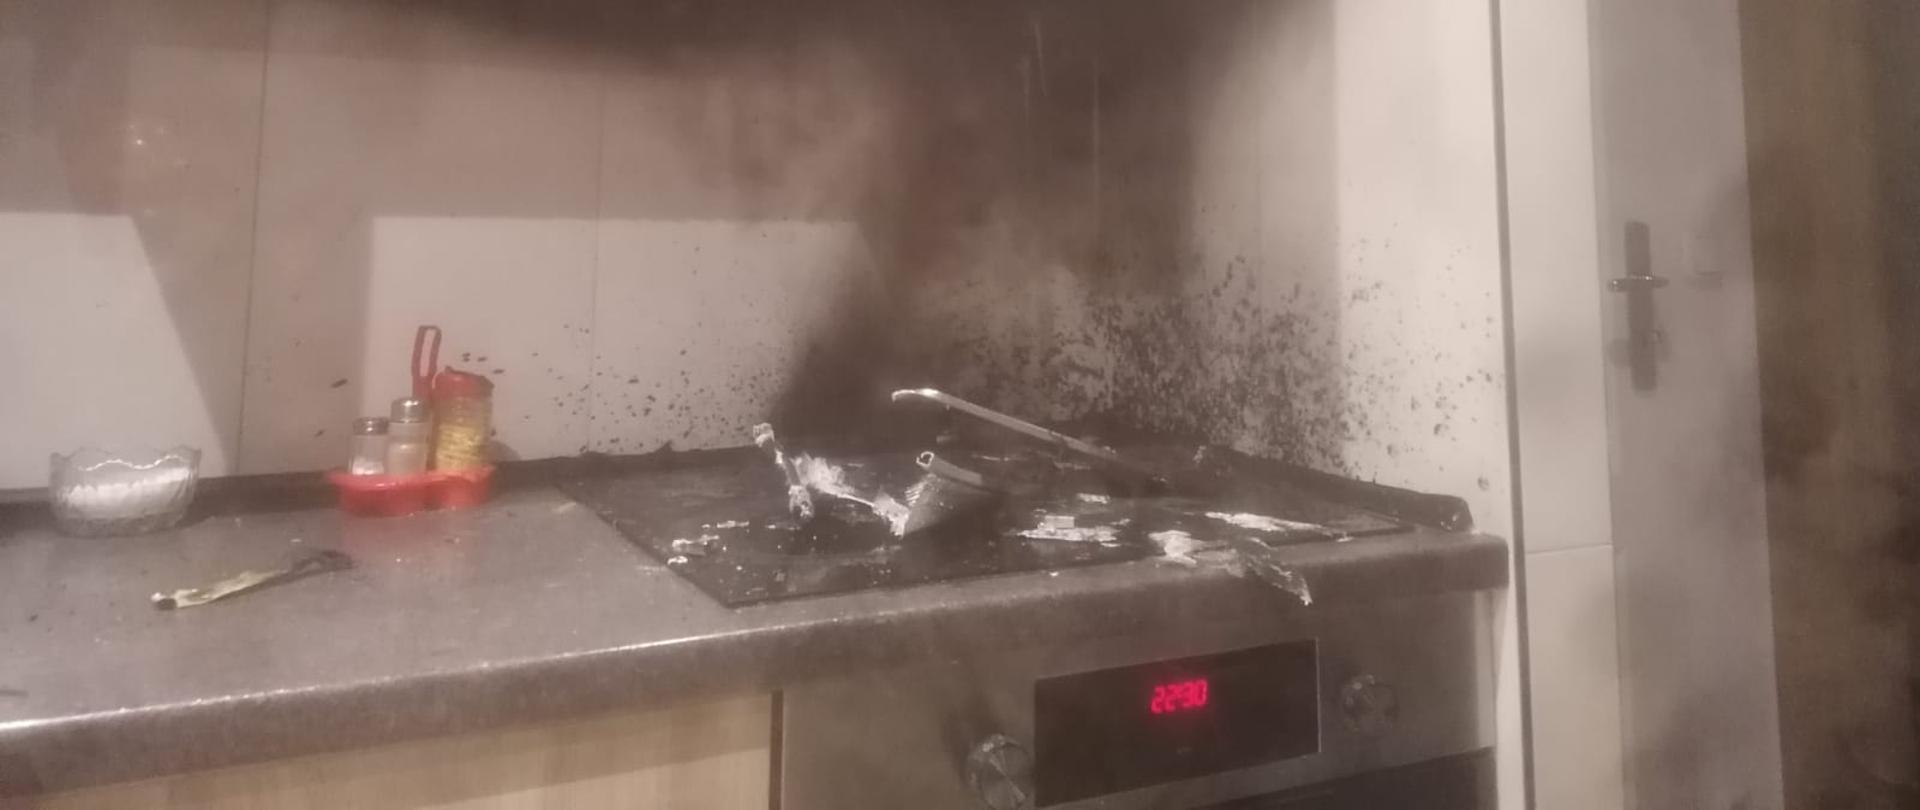 Widoczne miejsce pożaru zlokalizowane na kuchence indukcyjnej w pomieszczeniu kuchennym.